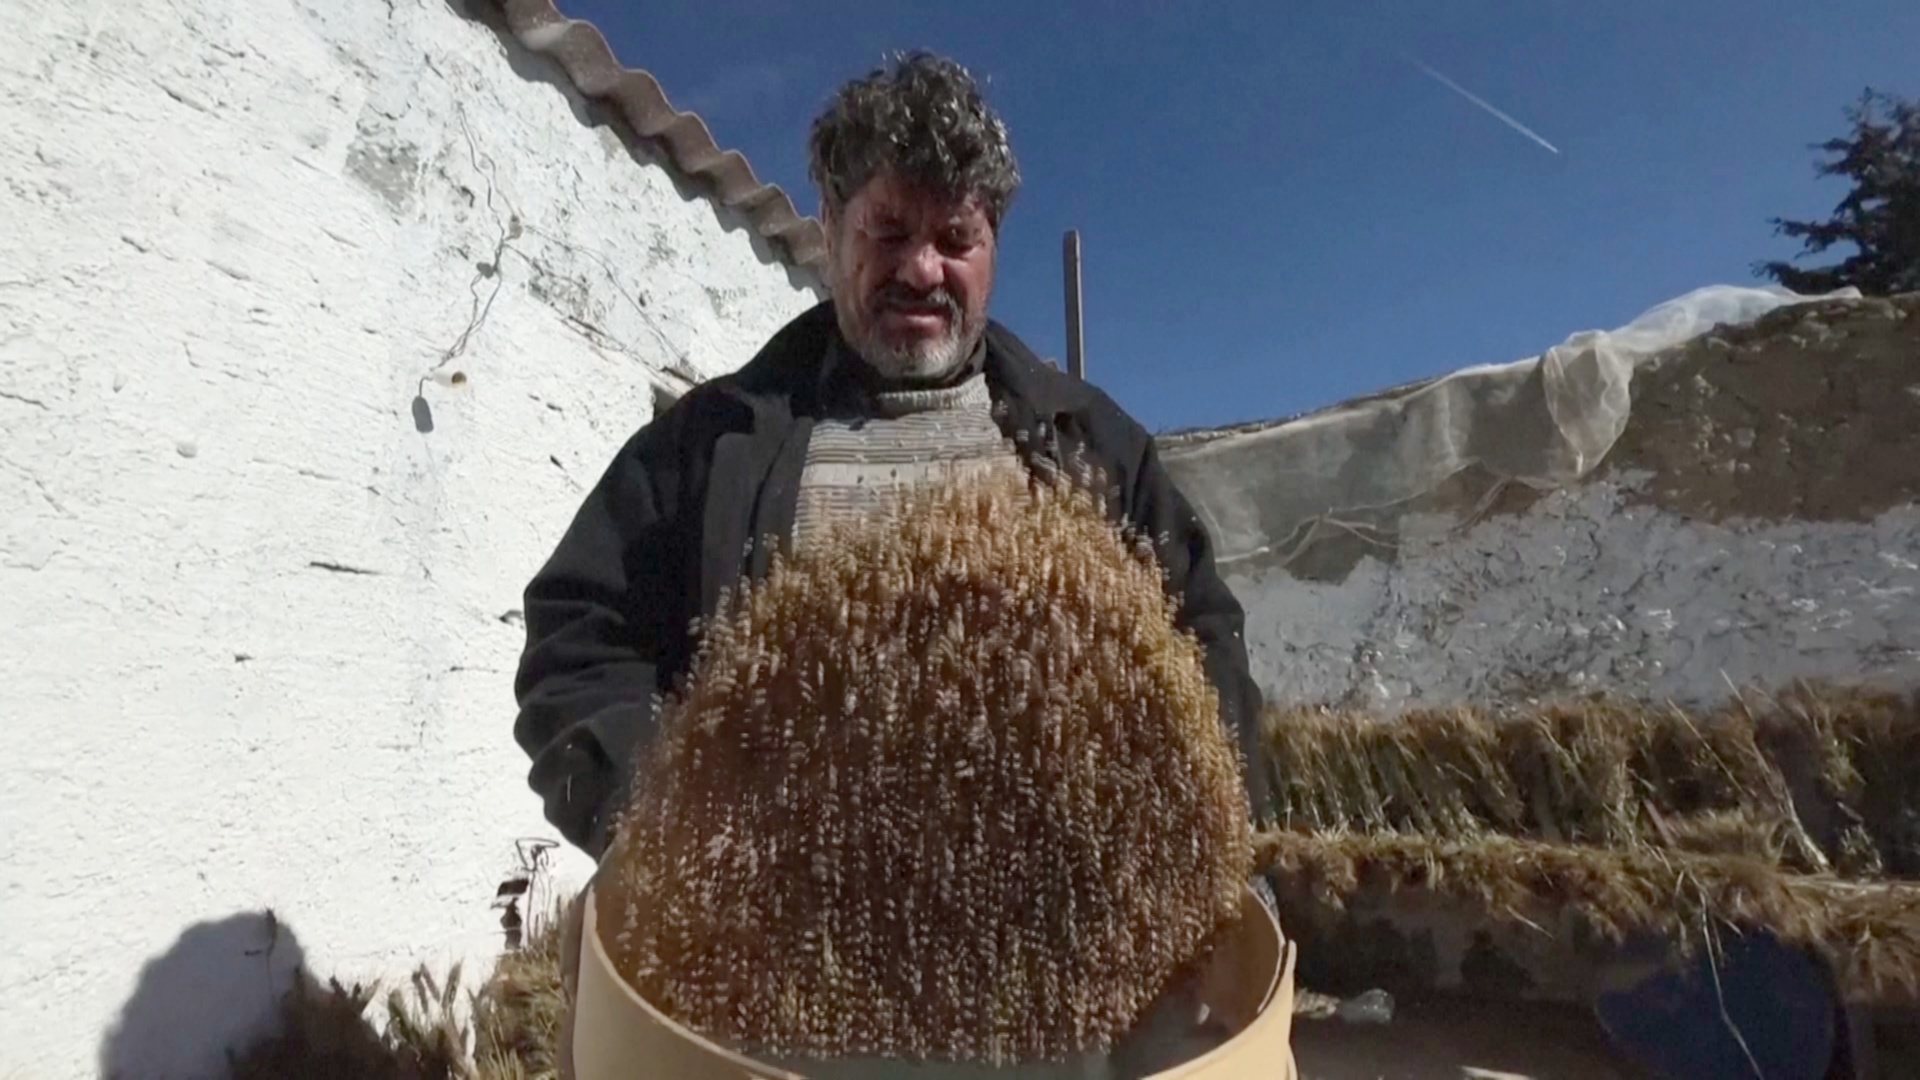 Тунисский фермер сеет пшеницу старых сортов, надеясь спасти сельское хозяйство